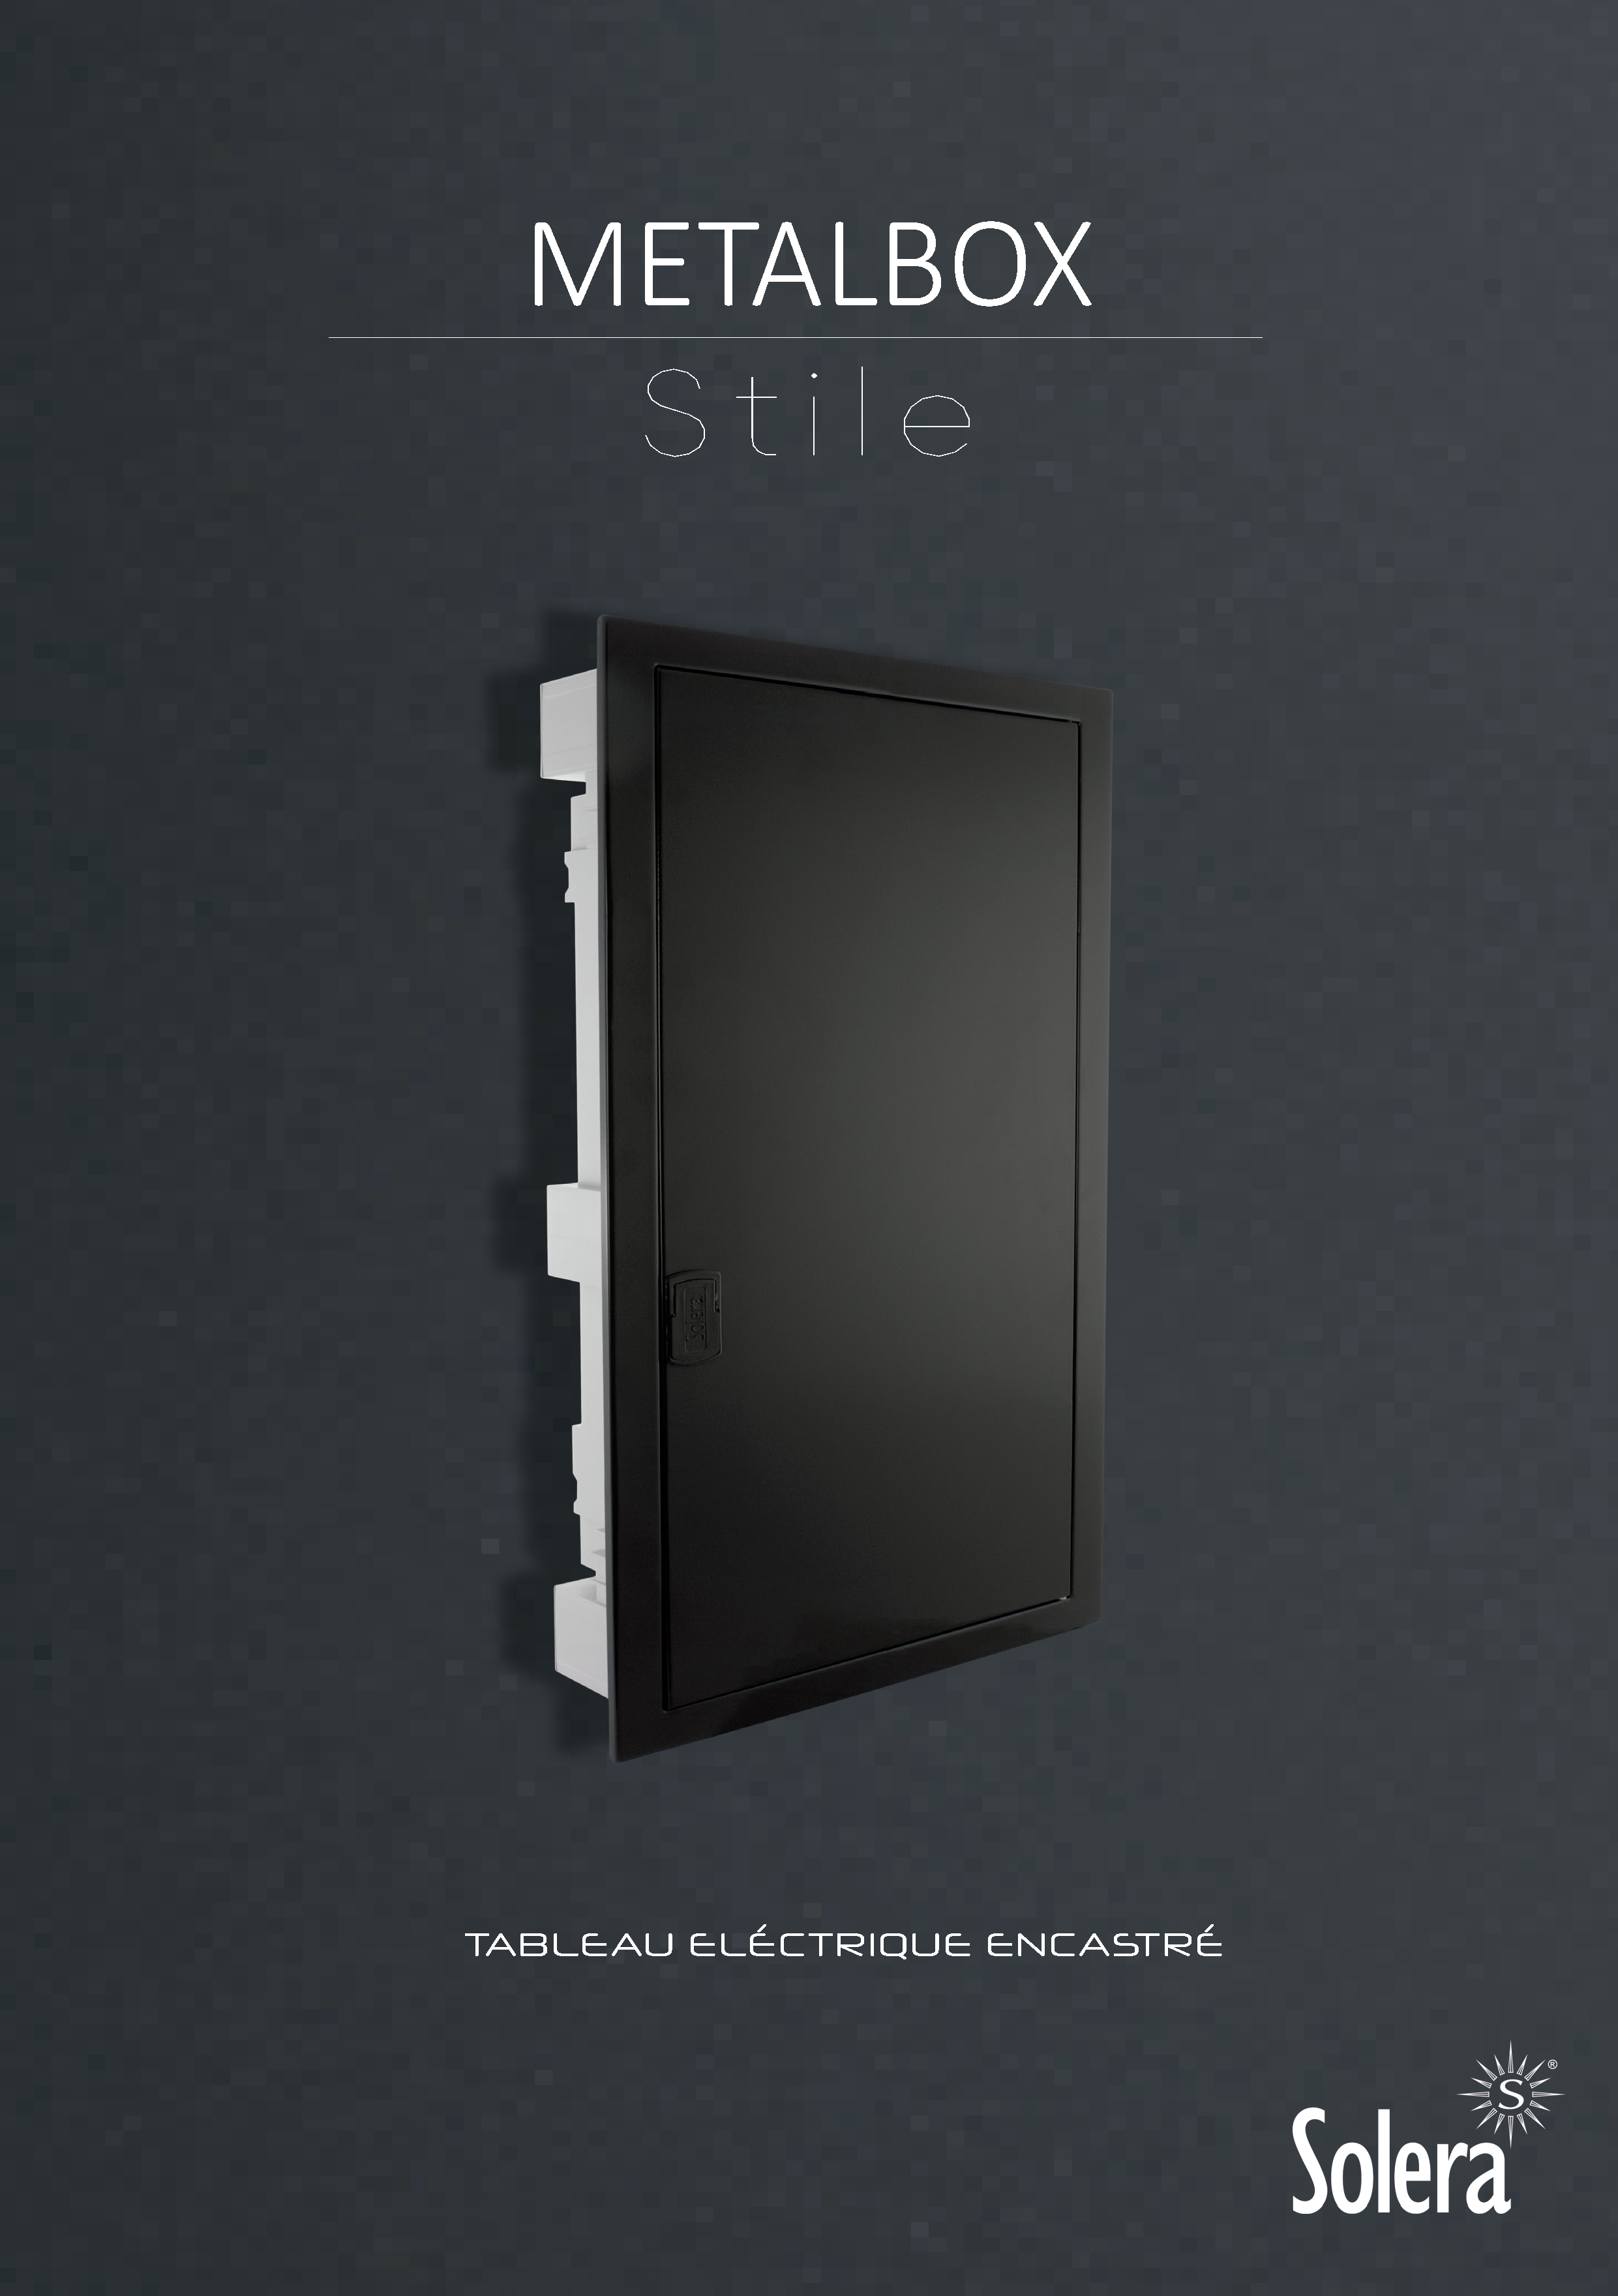 Metalbox Stile: Tableau eléctrique encastré